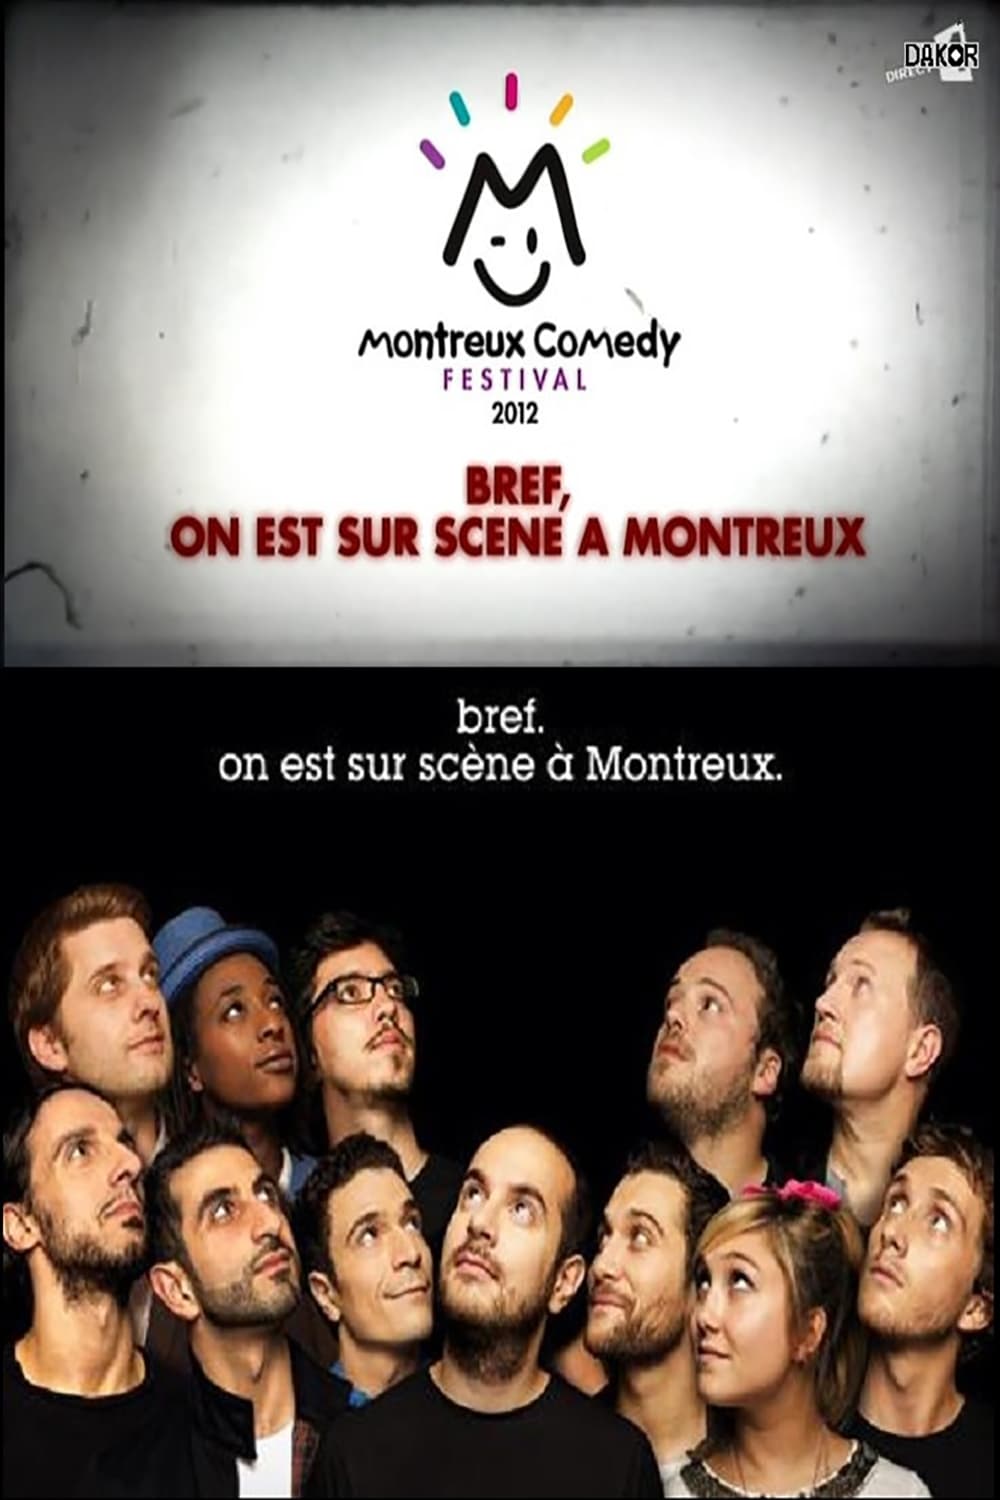 Bref, on est sur scène à Montreux (2012)